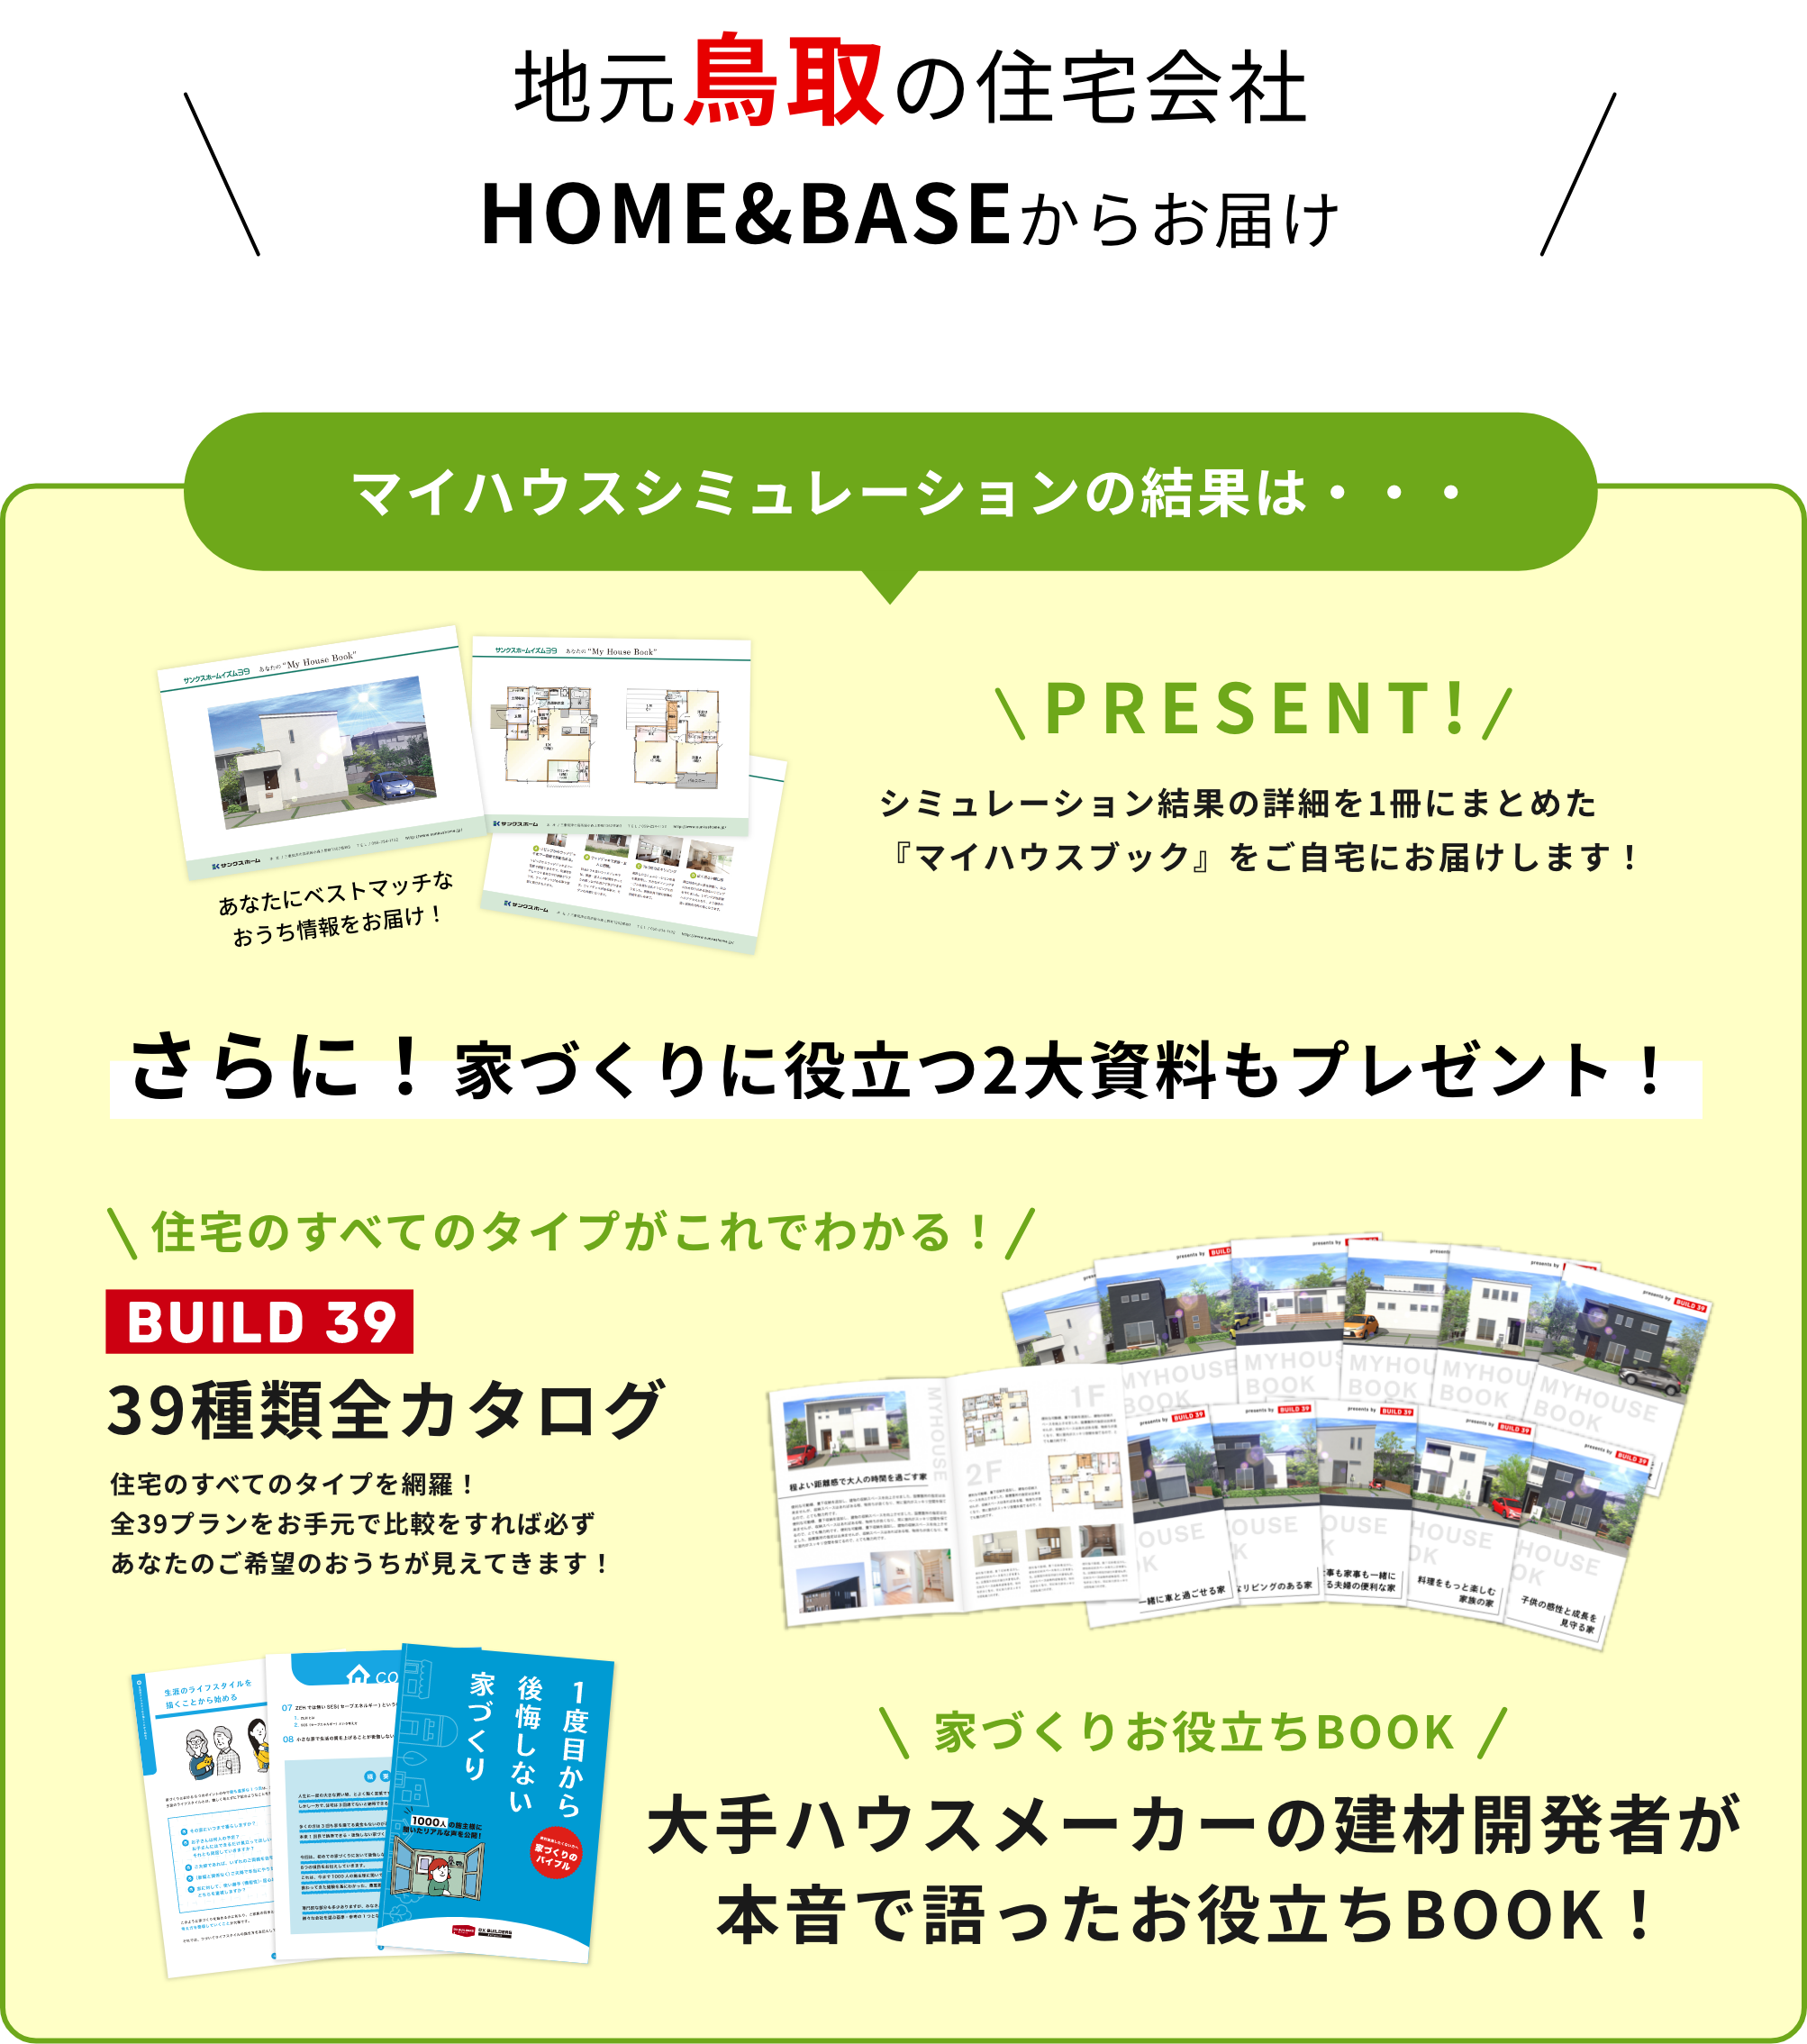 地元鳥取の住宅会社 HOME&BASE「株式会社ヤマタホーム」からお届け マイハウスシミュレーションの結果は、一冊の「マイハウスブック」に仕上げてプレゼントいたします！